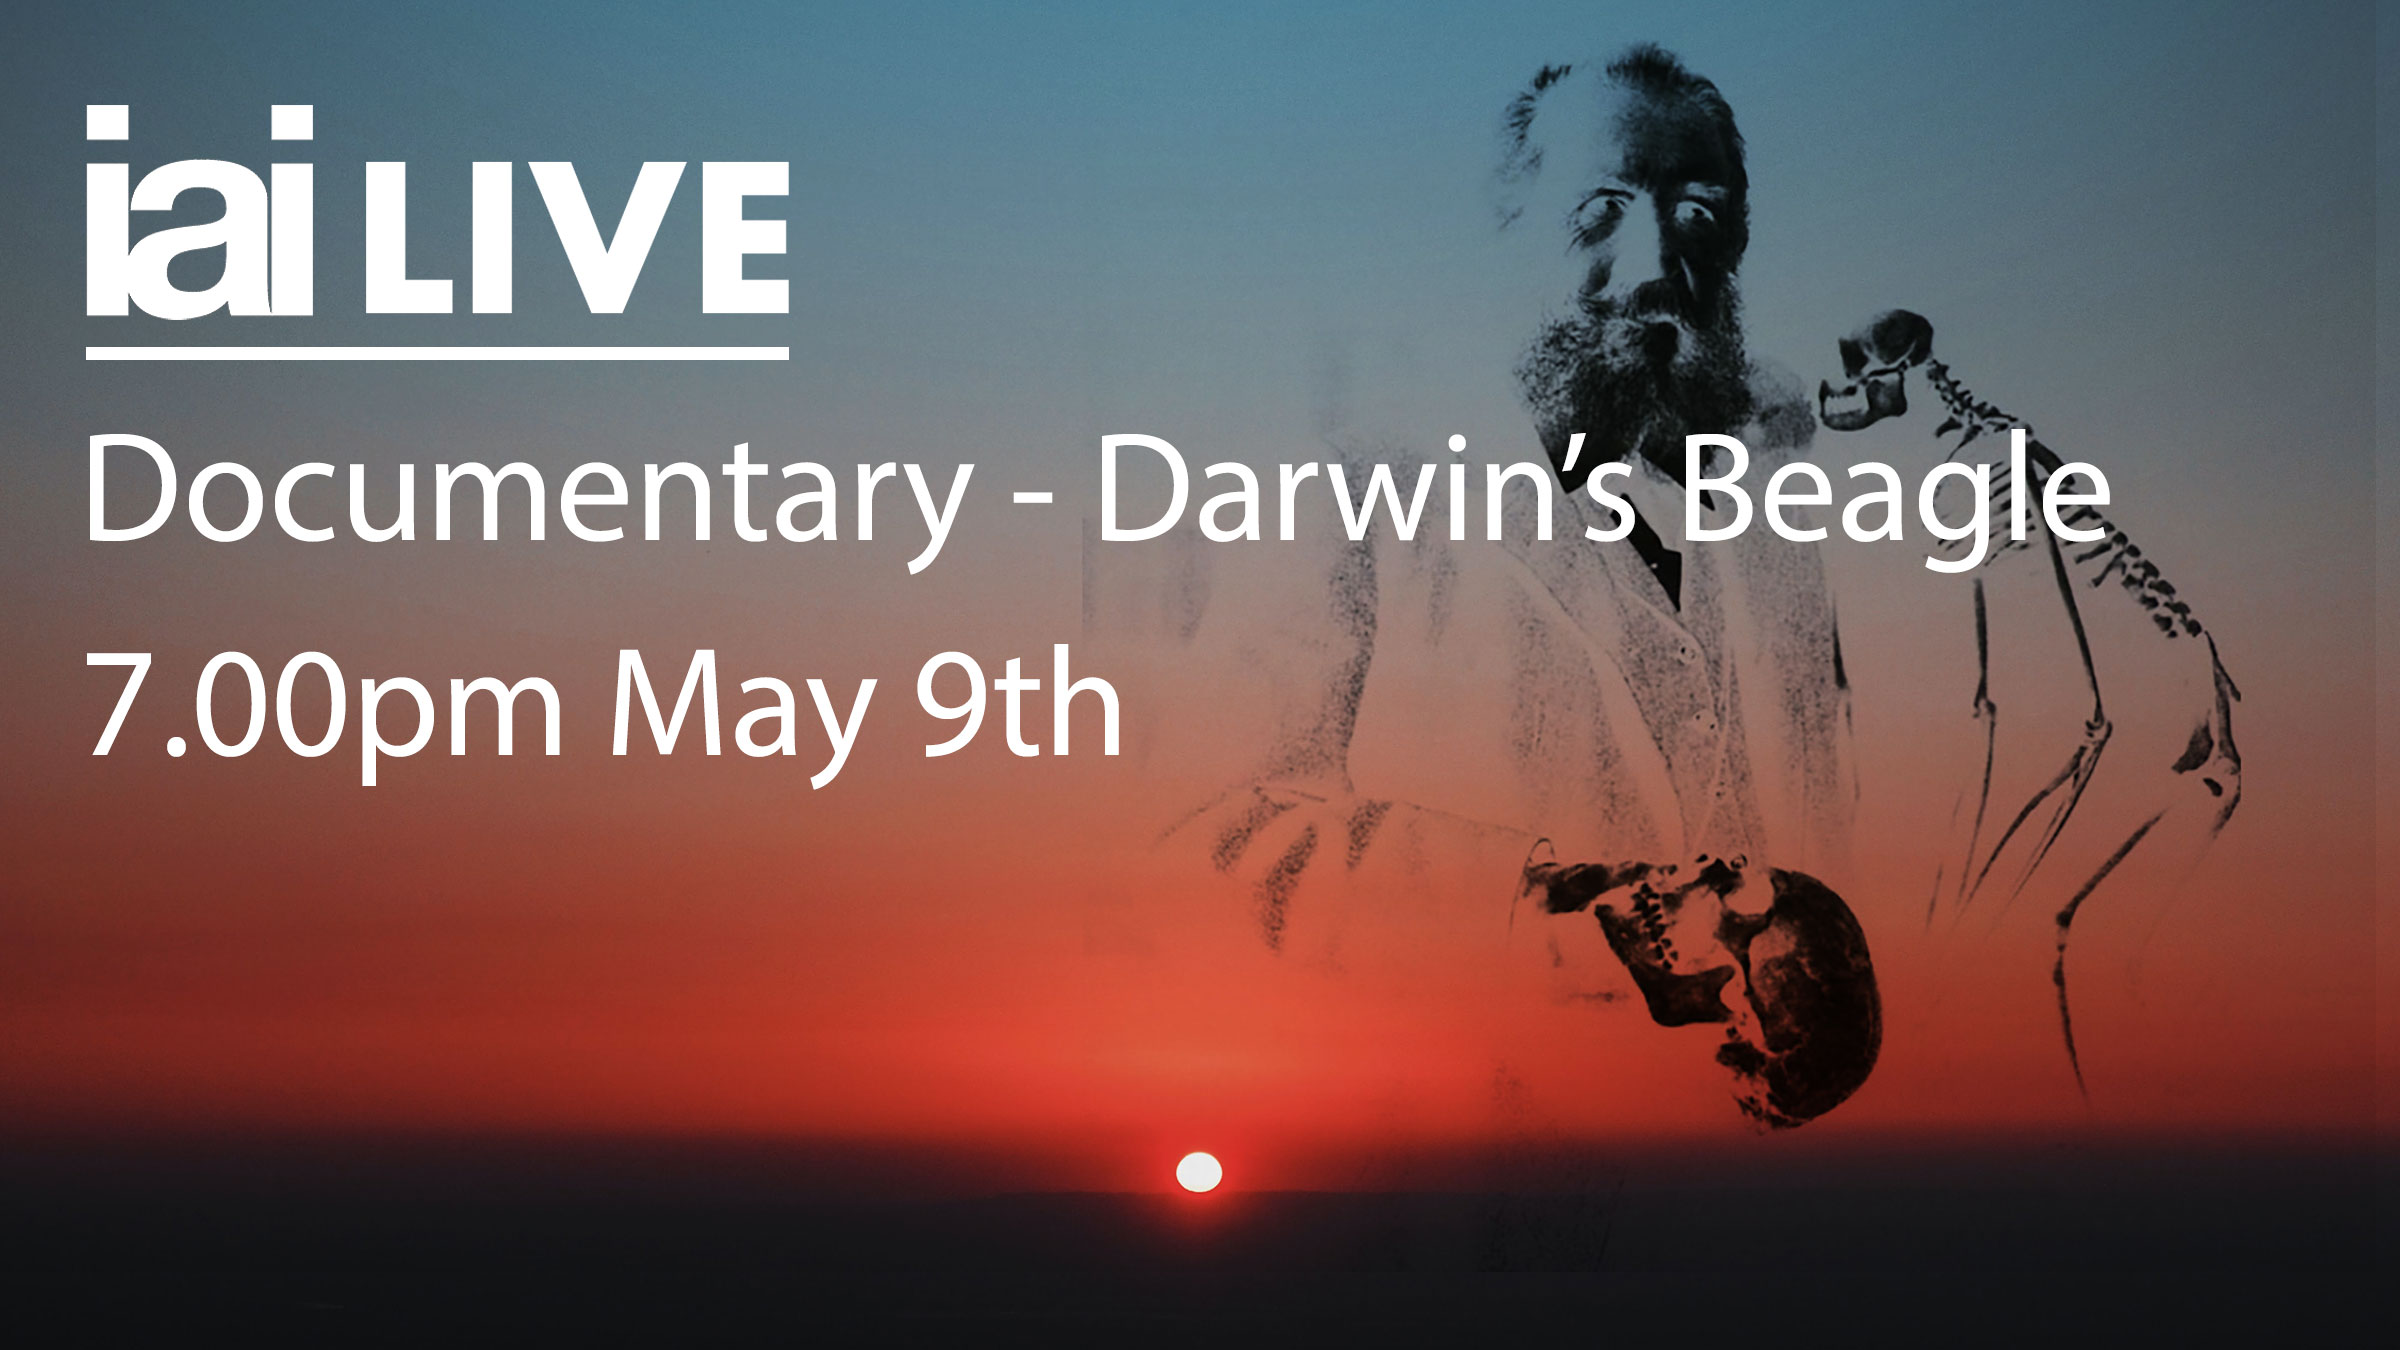 Documentary - Darwin's Beagle